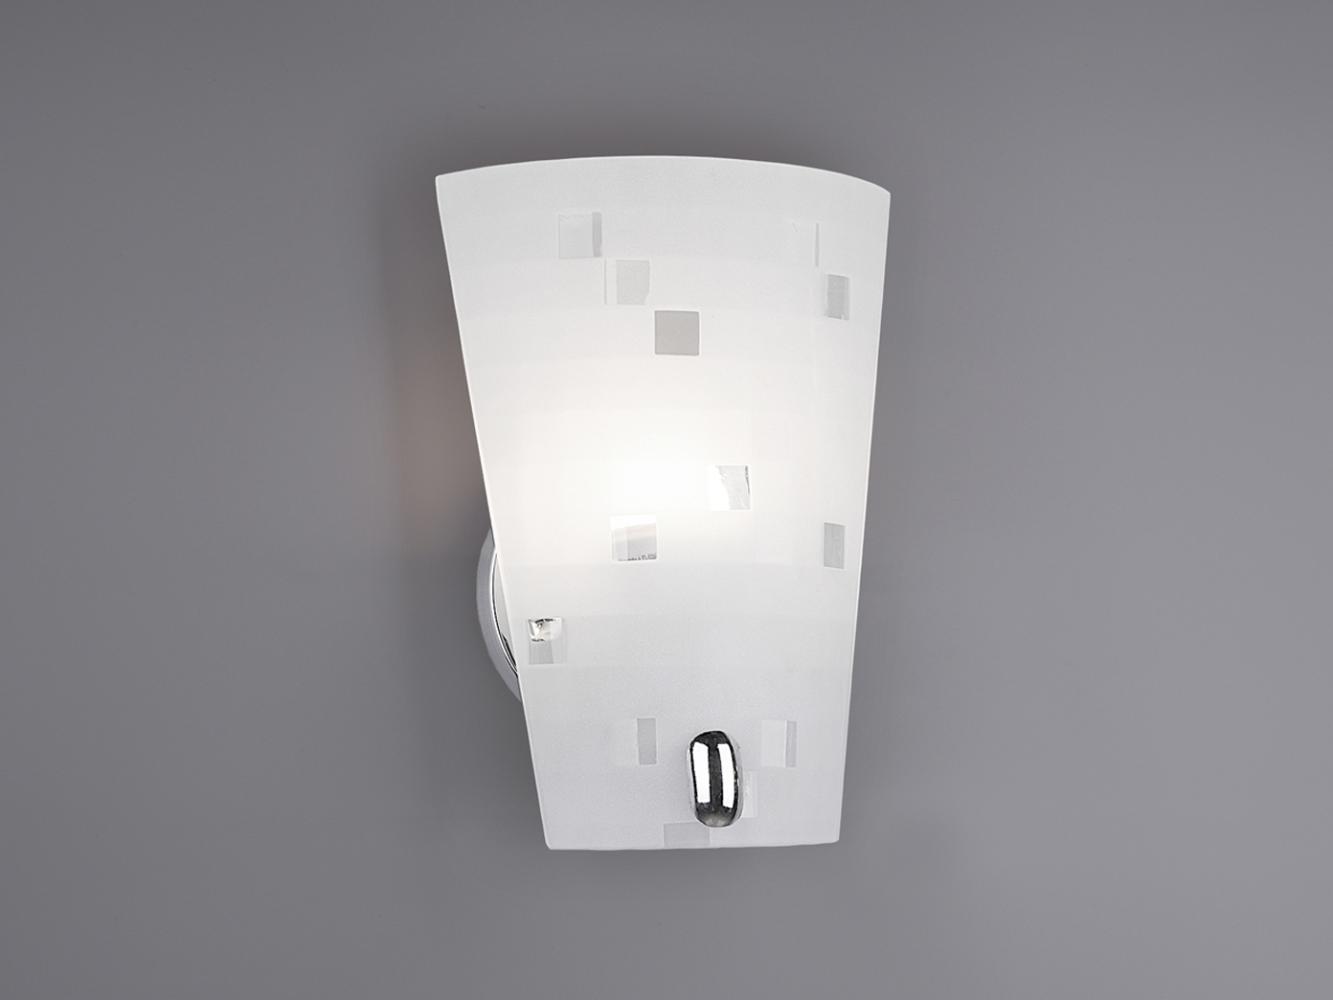 LED Wandleuchte mit satiniertem Glaslampenschirm in weiß + grau, H 23cm Bild 1